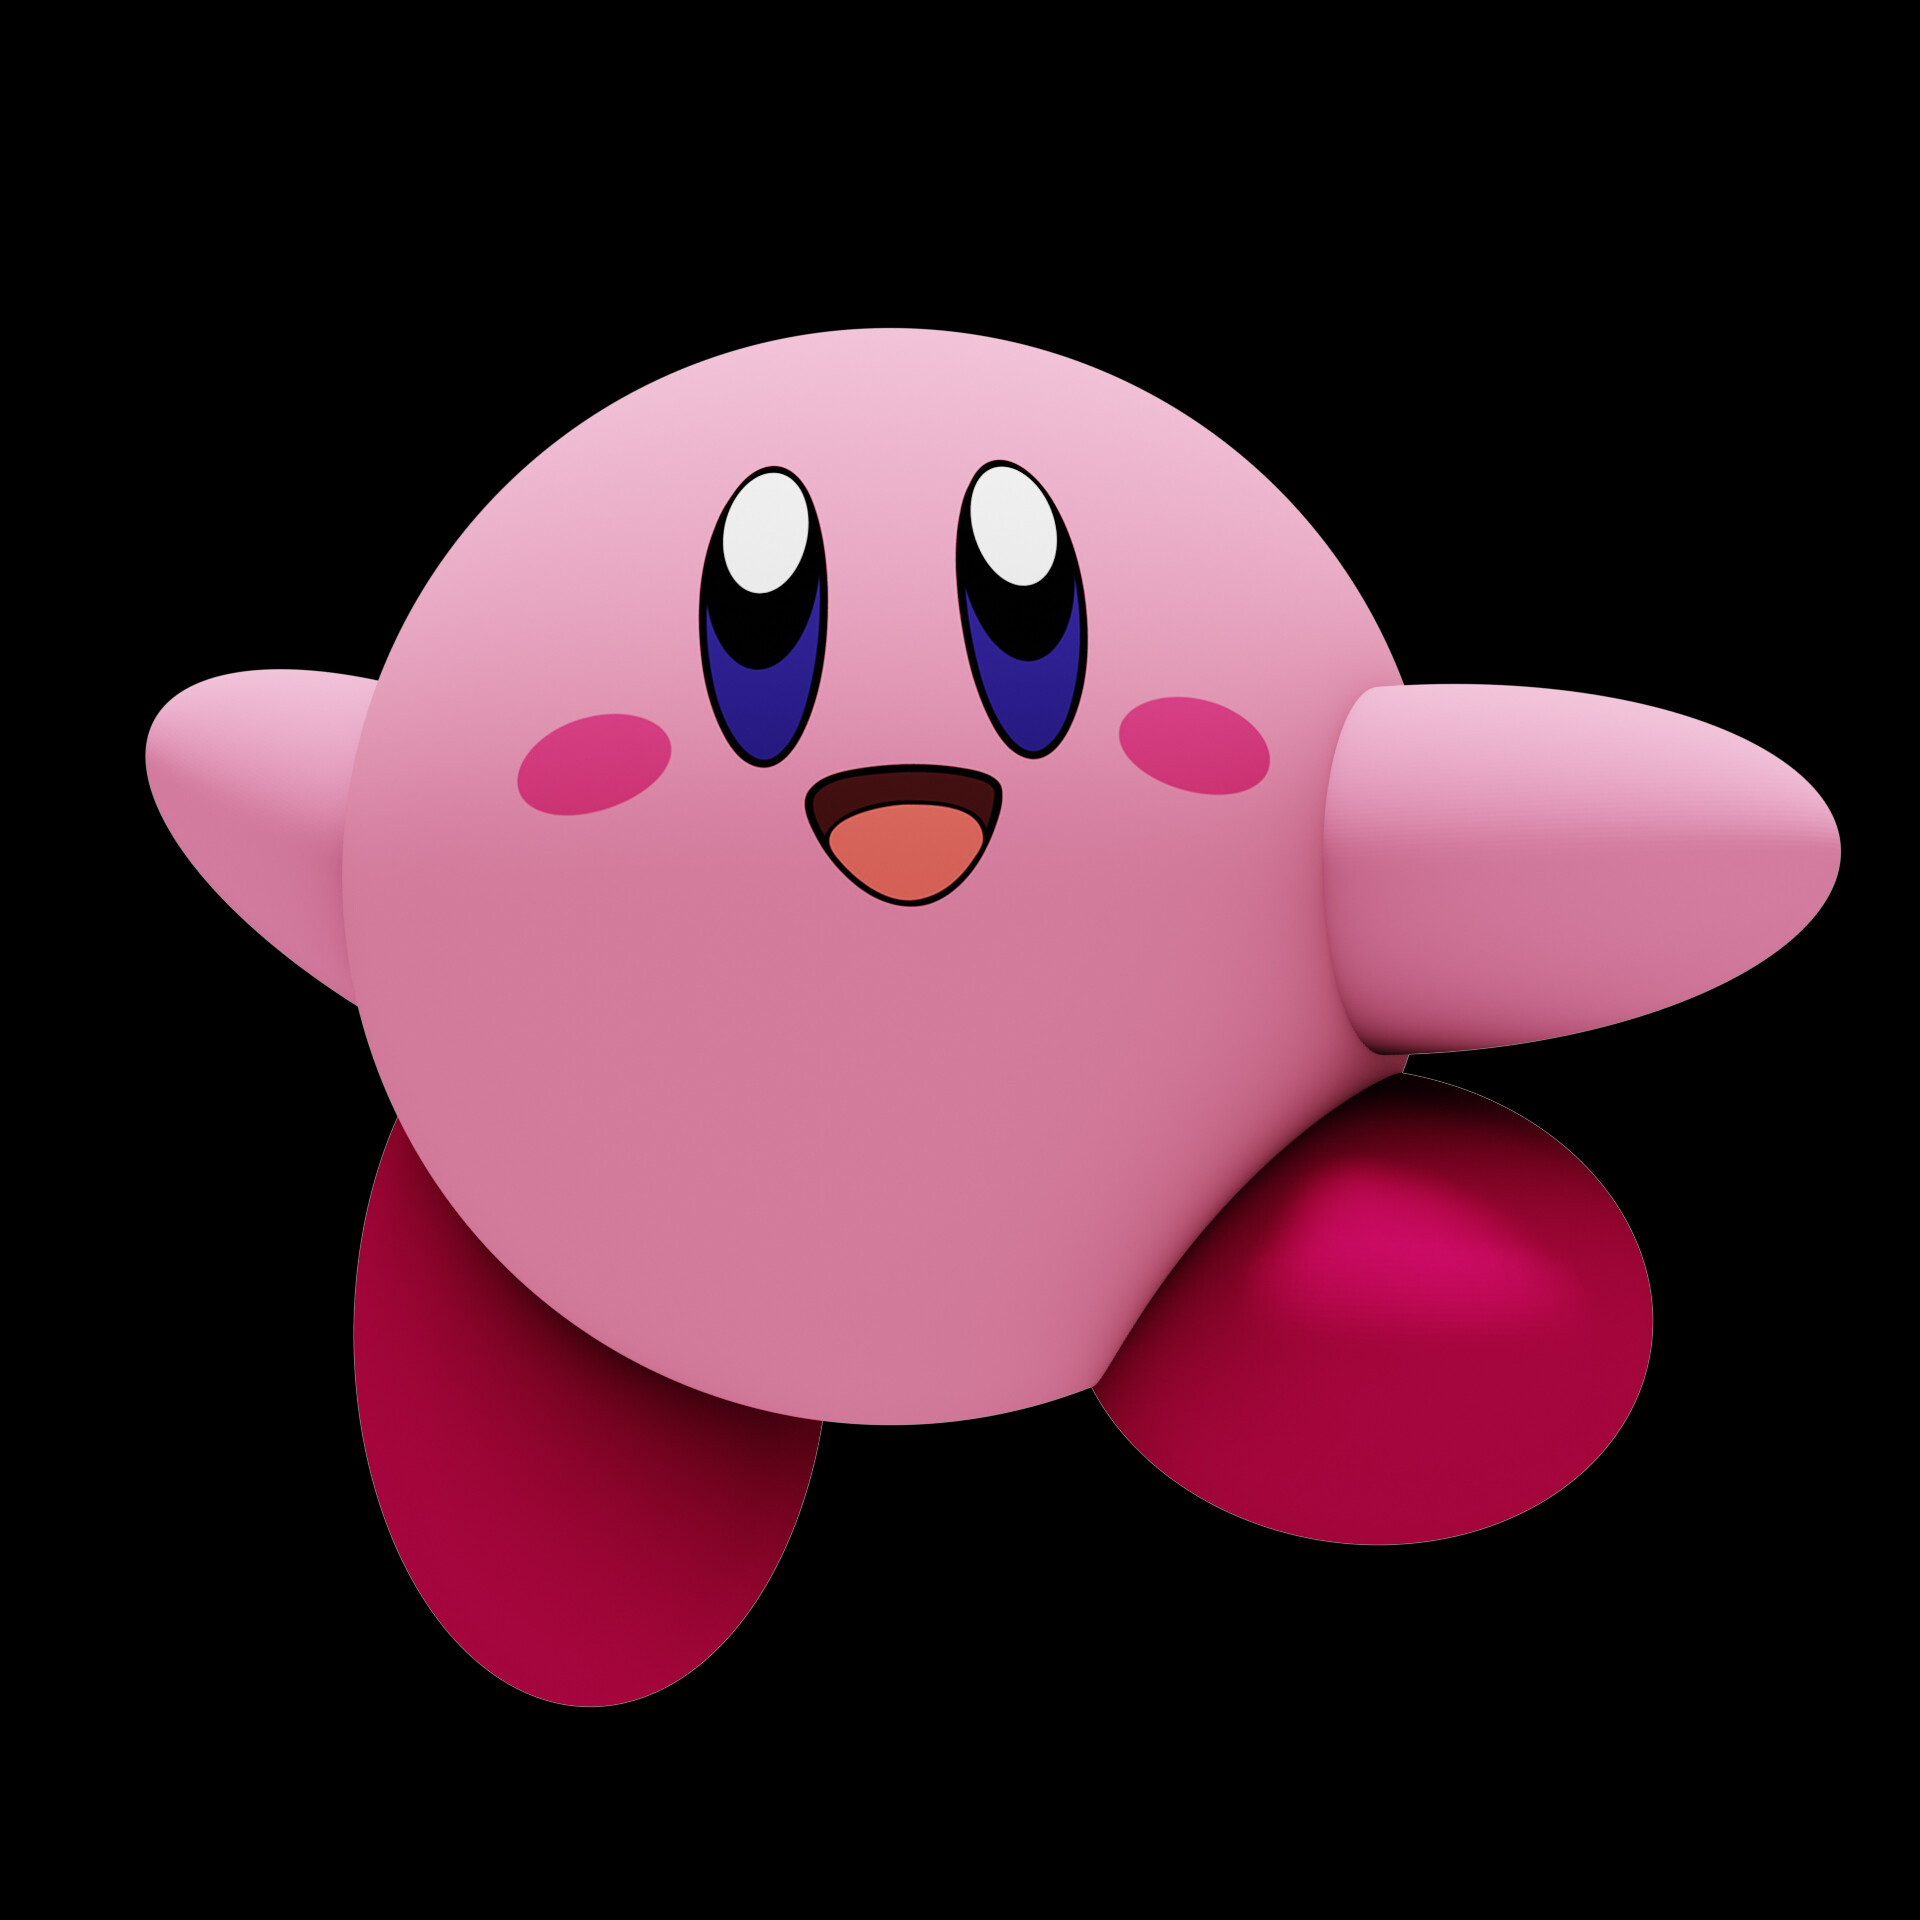 ArtStation - Kirby Made In Blender 